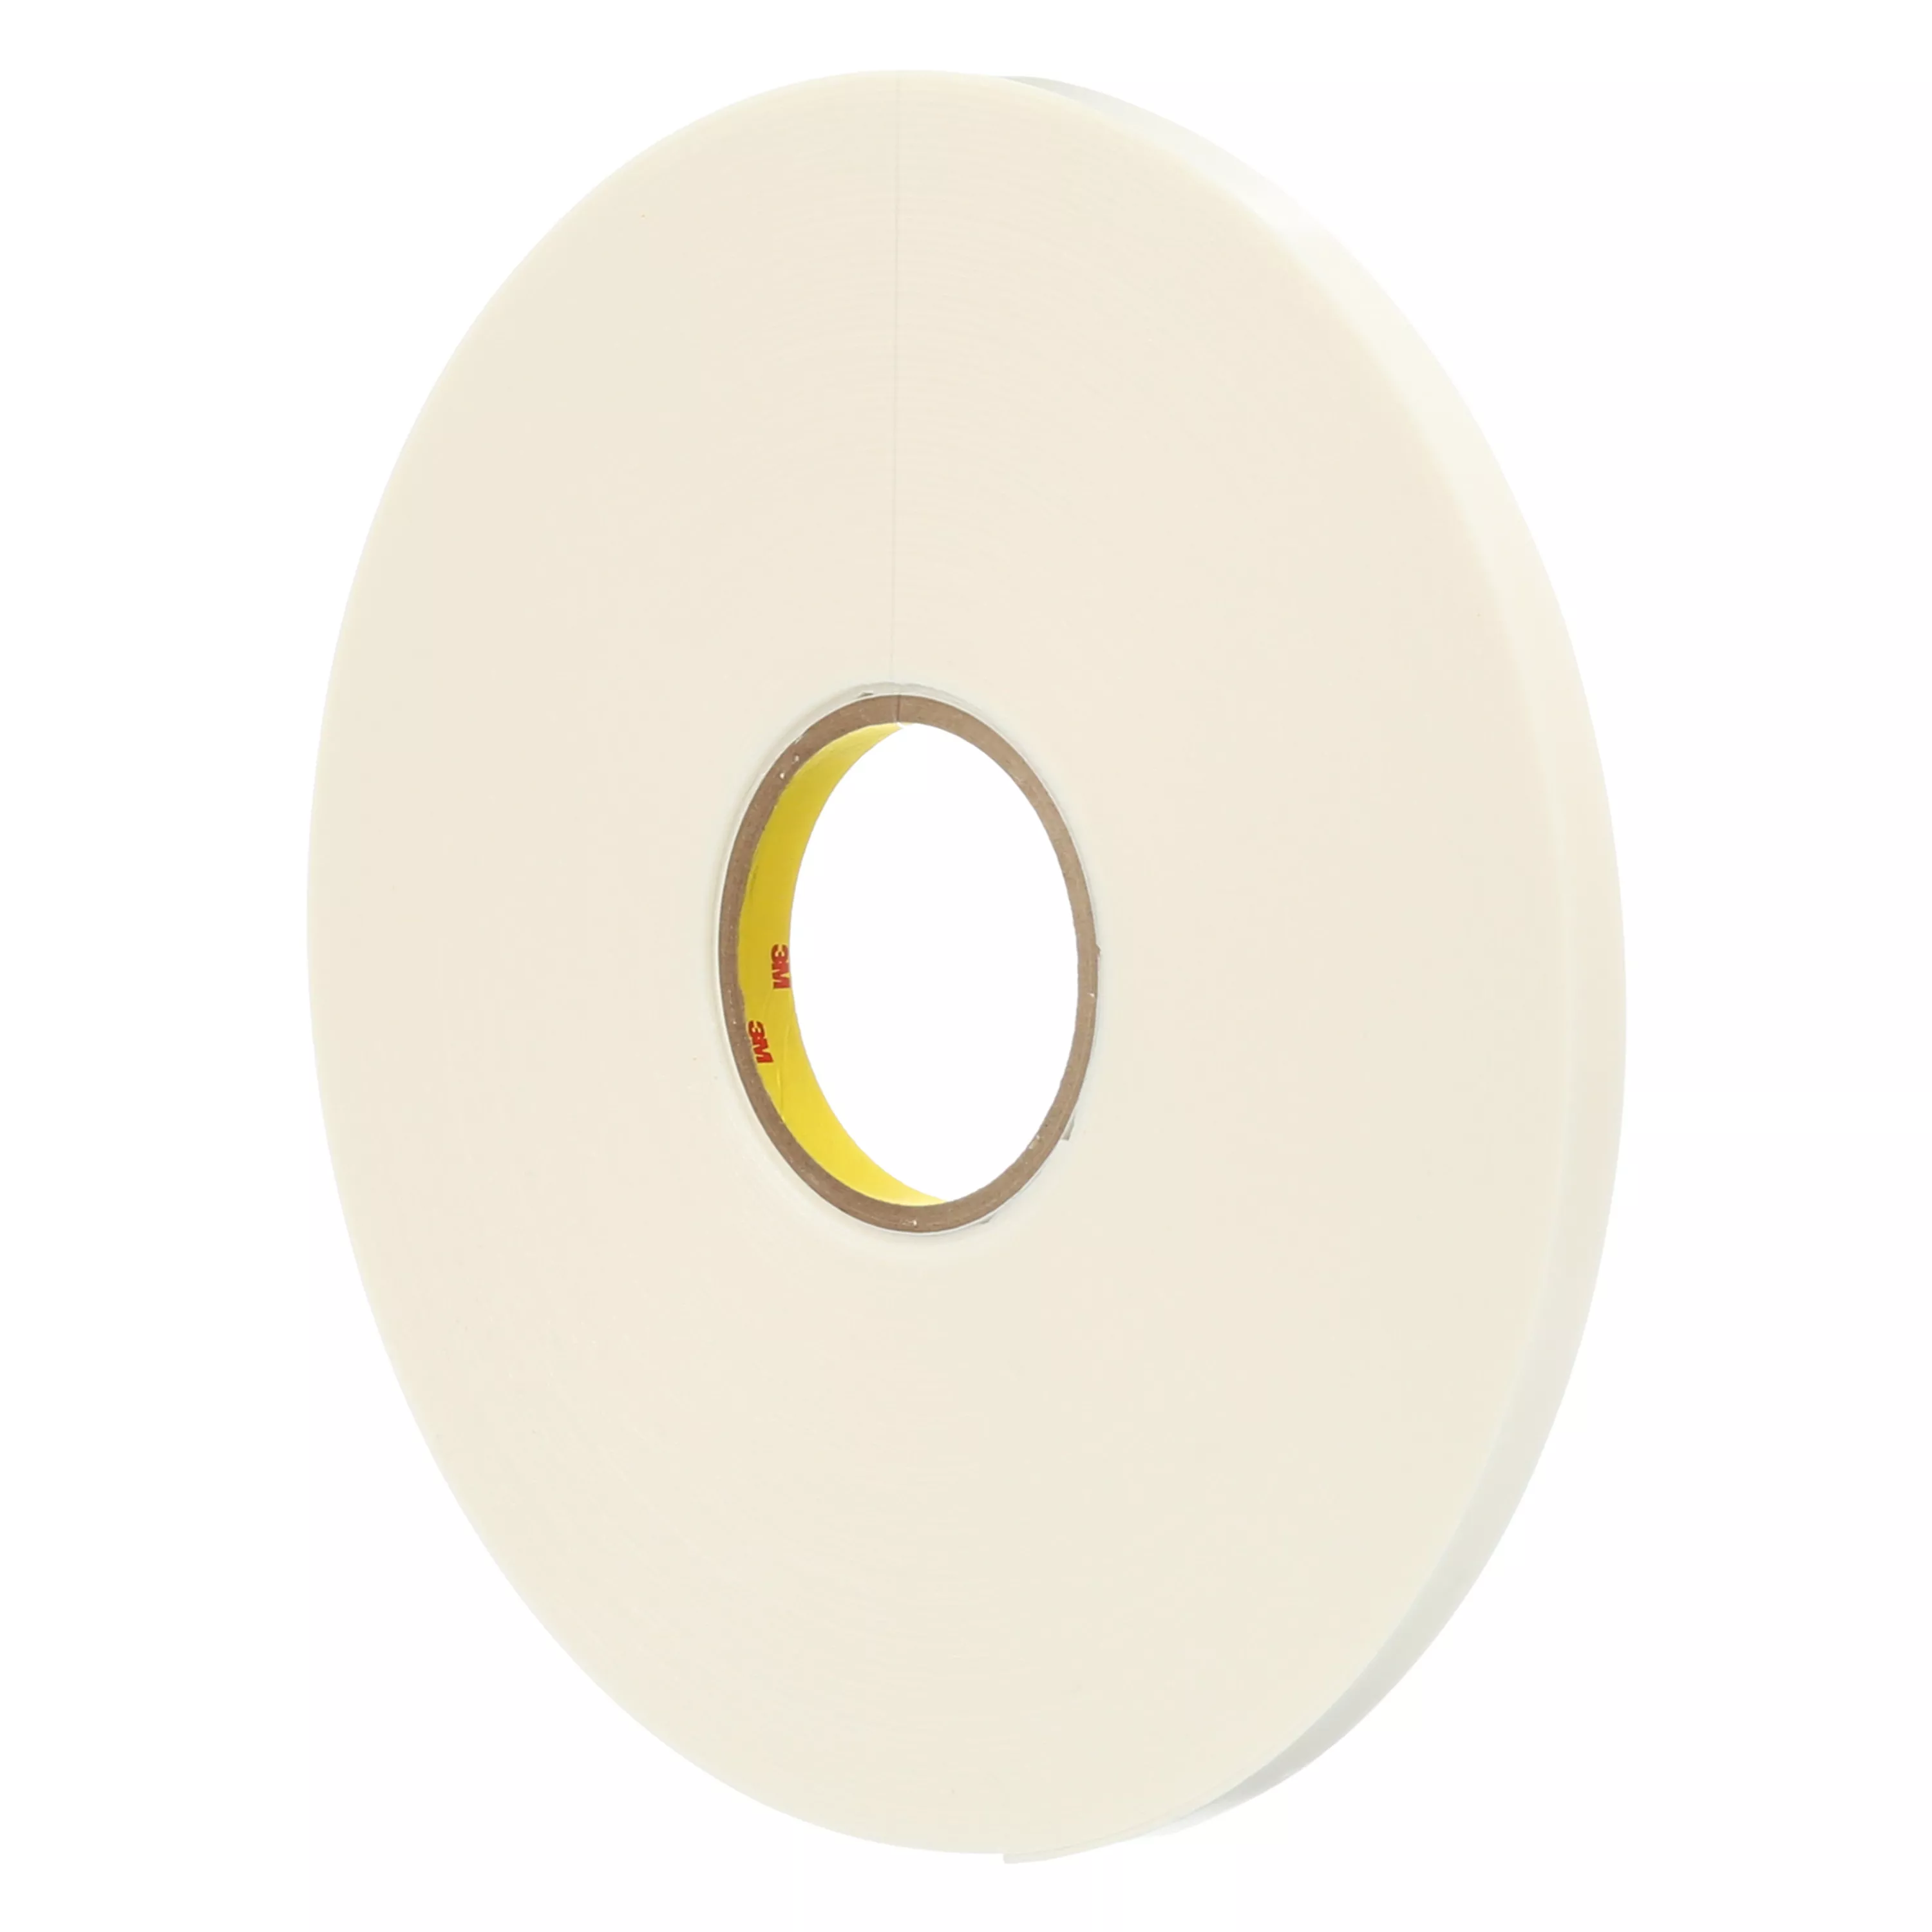 3M™ Double Coated Polyethylene Foam Tape 4466, White, 3/8 in x 36 yd, 62
mil, 24 Roll/Case